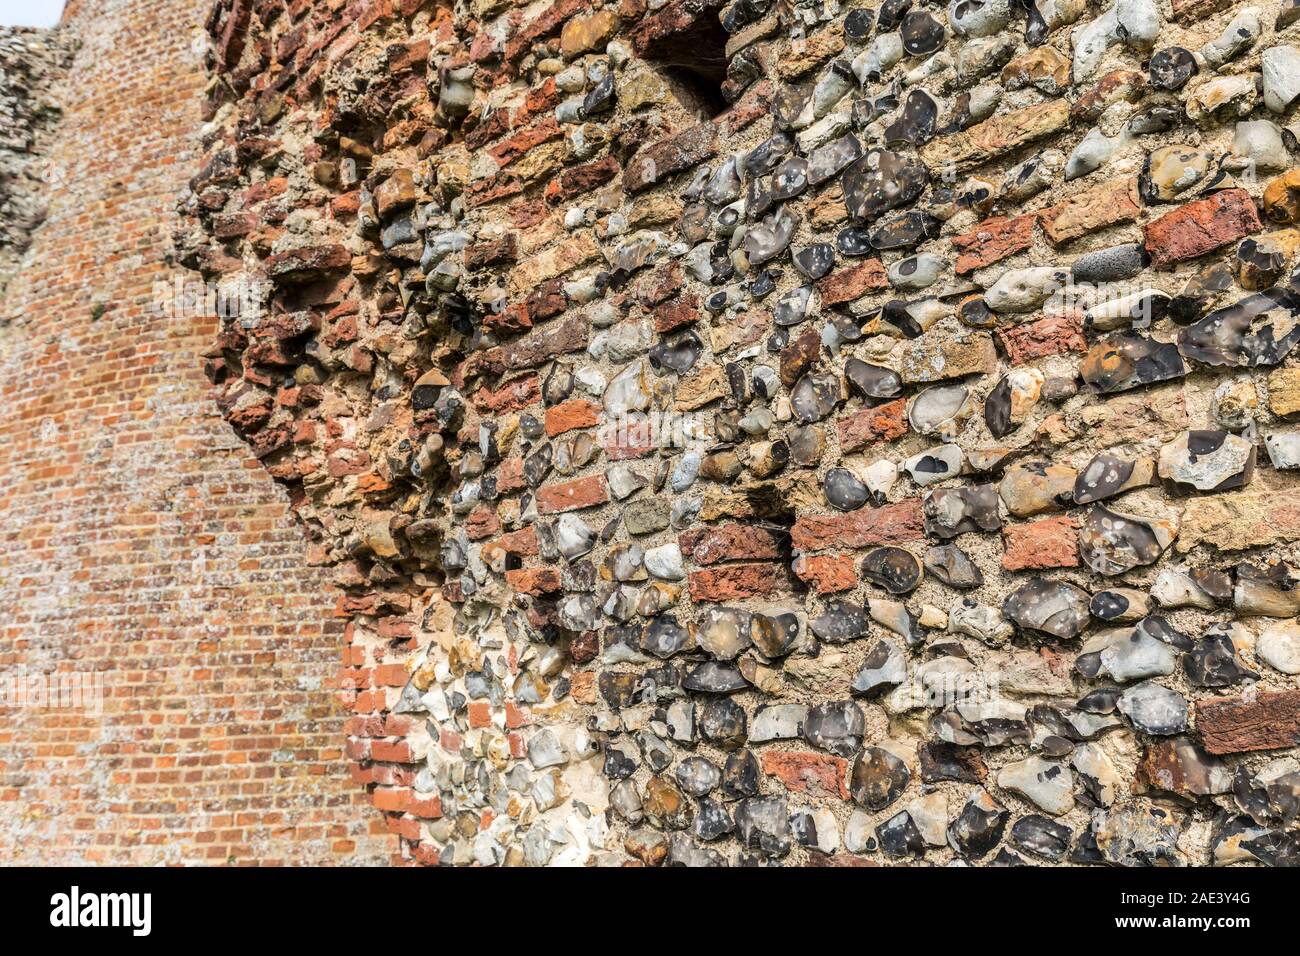 Le silex et la brique utilisée pour construire l'intérieur de moulin St Benet's Abbey, Norfolk Broads, England, UK Banque D'Images